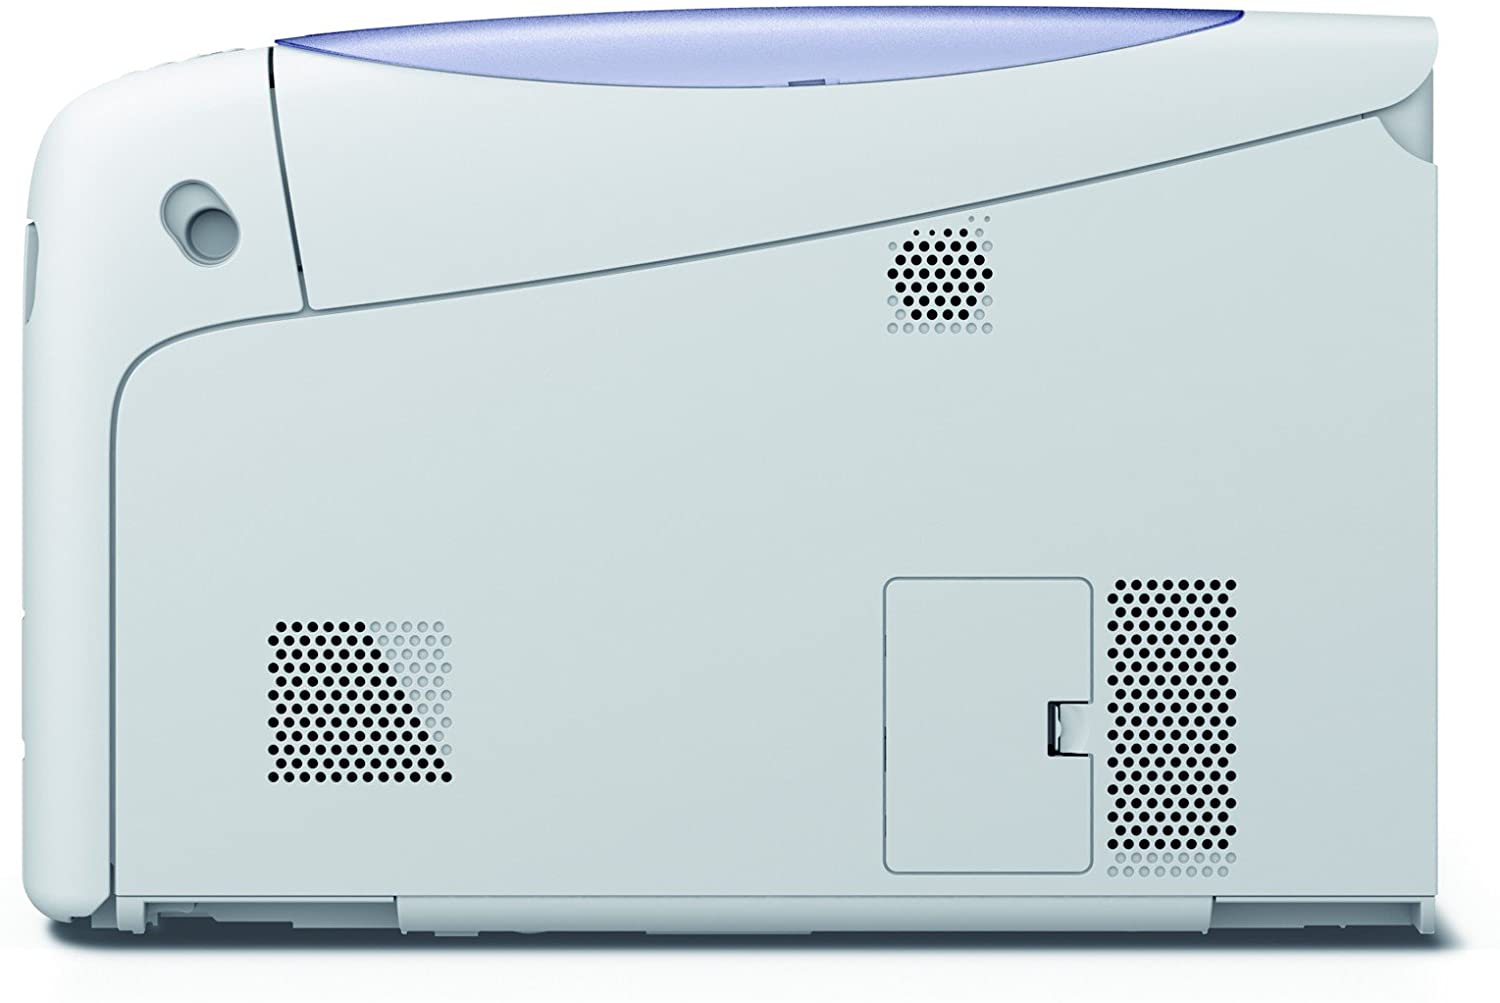 OKI C831 A3 Farblaserdrucker 1200 x 1200 DPI 35 Seiten pro Minute Netzwerk